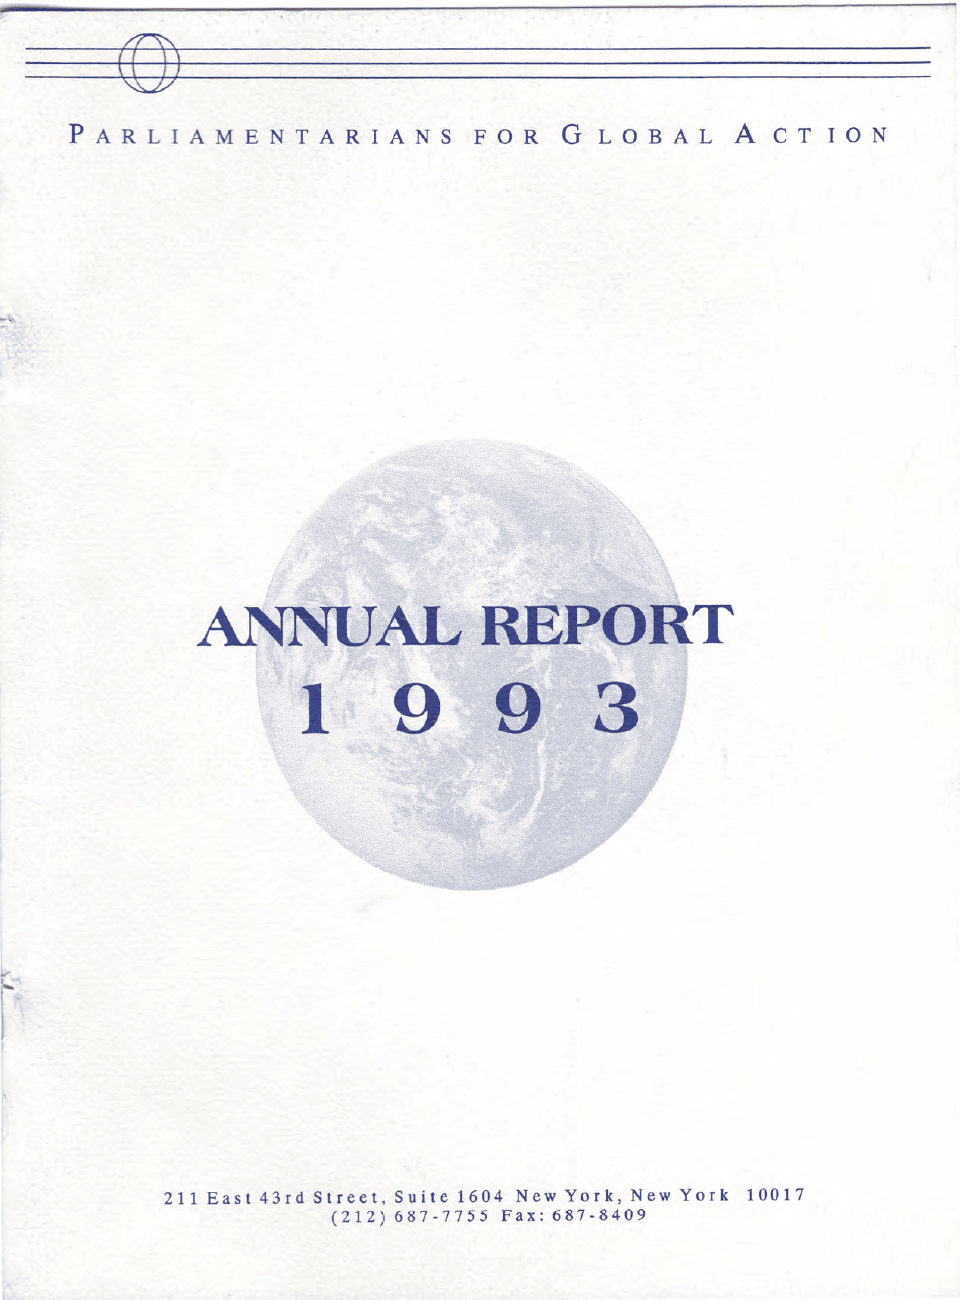 PGA Annual Report 1993